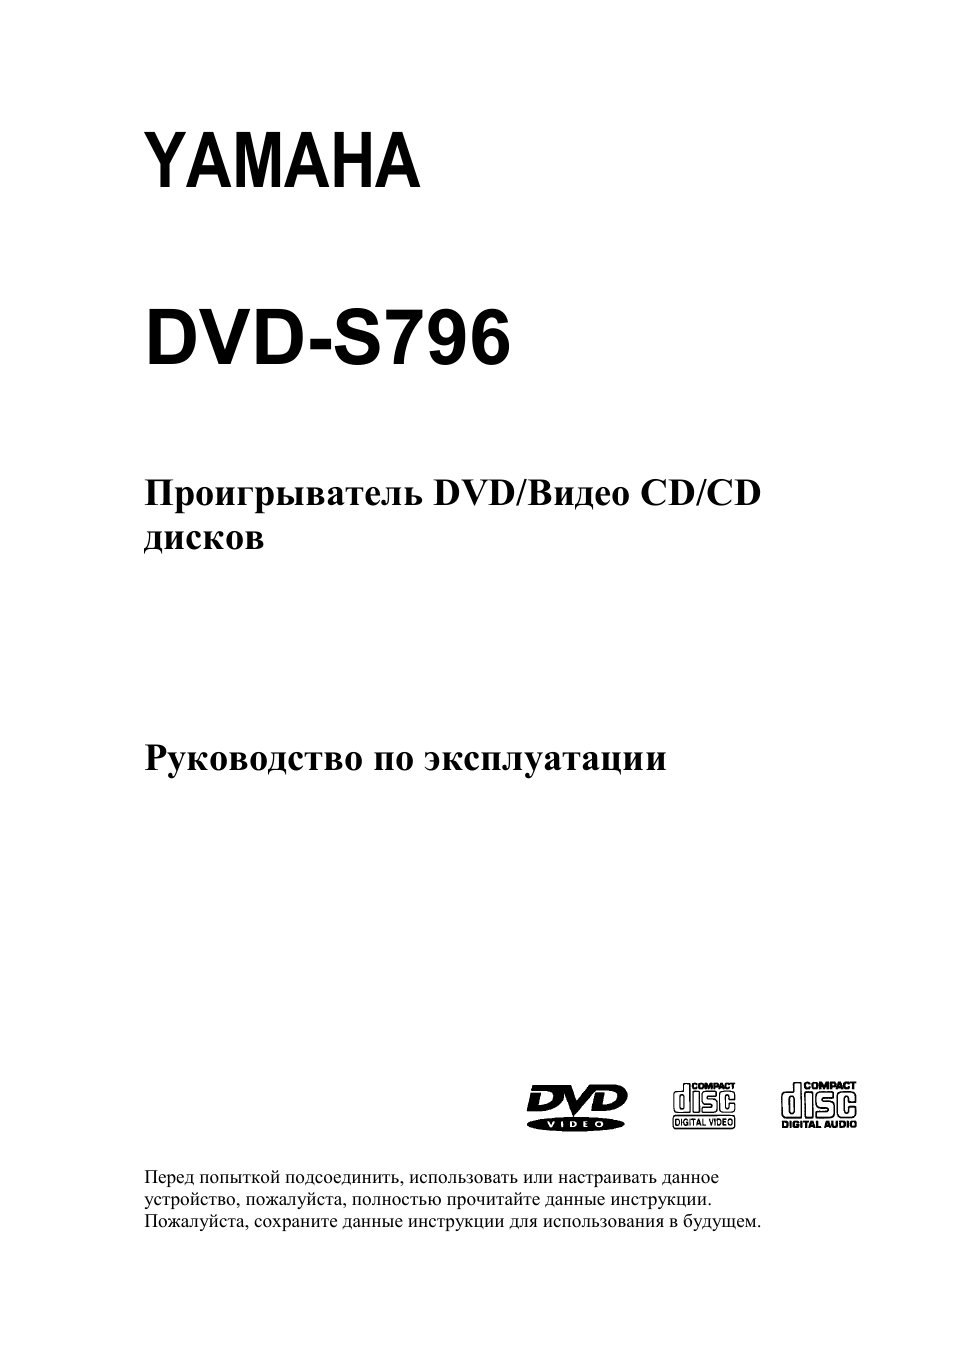 Инструкция по эксплуатации Yamaha DVD-S796 | 33 страницы